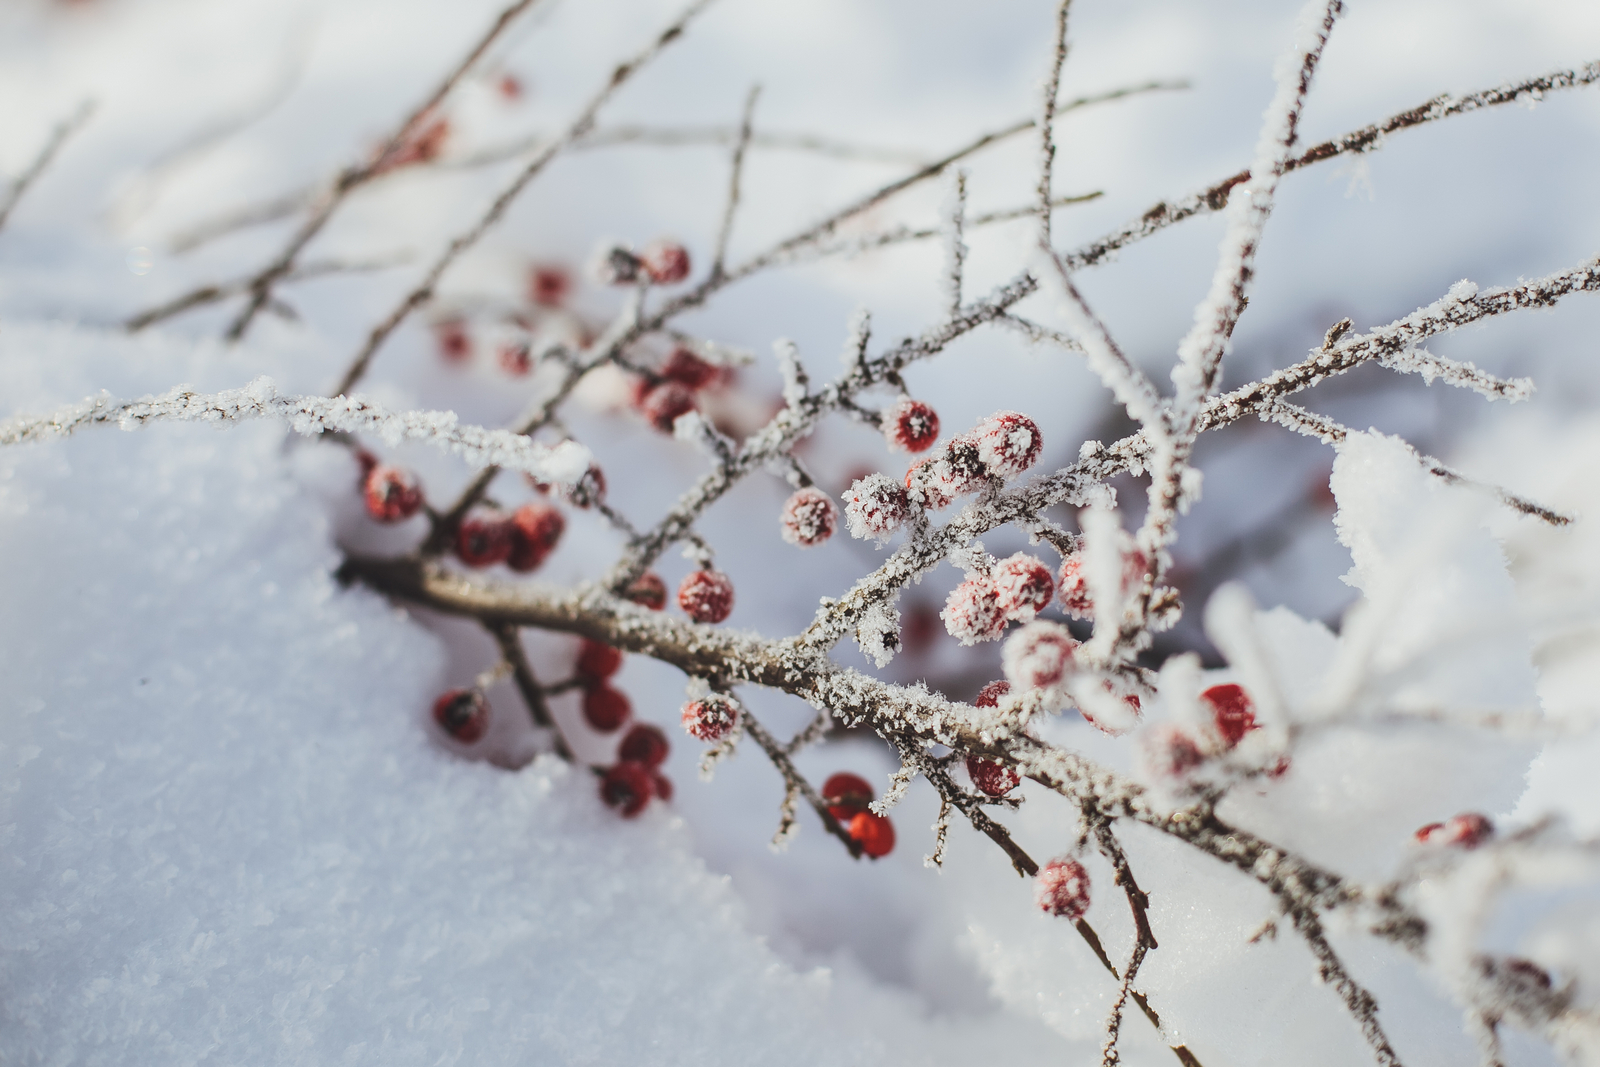 seven.pics presents - Winter beauty